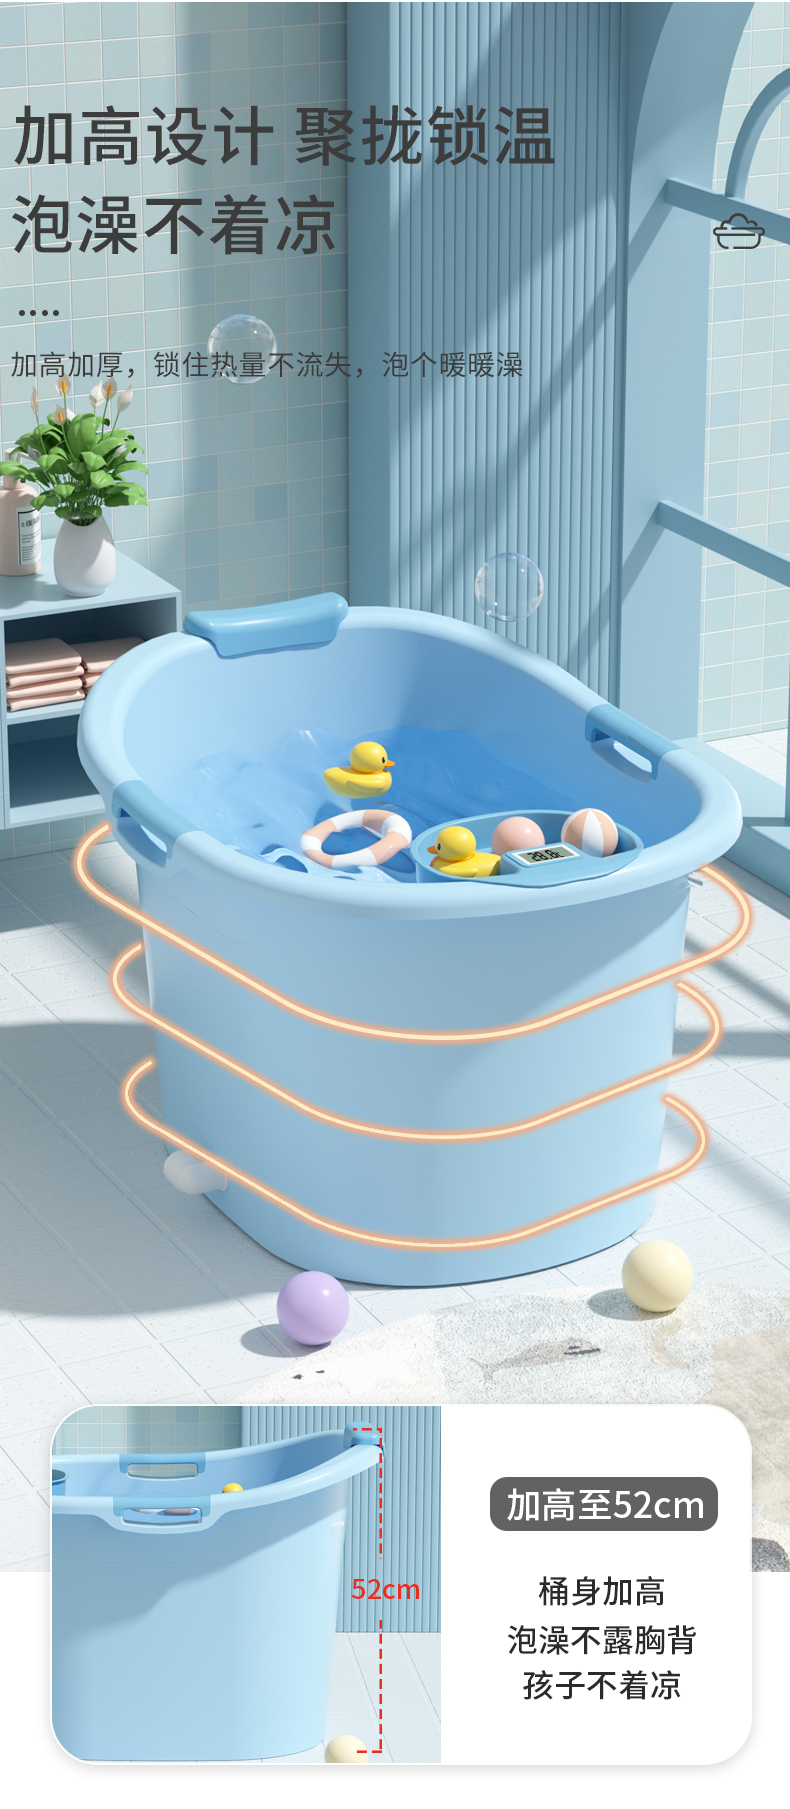 儿童洗澡桶家用坐浴盆小孩加厚泡澡桶婴儿宝宝游泳桶全身塑料浴缸